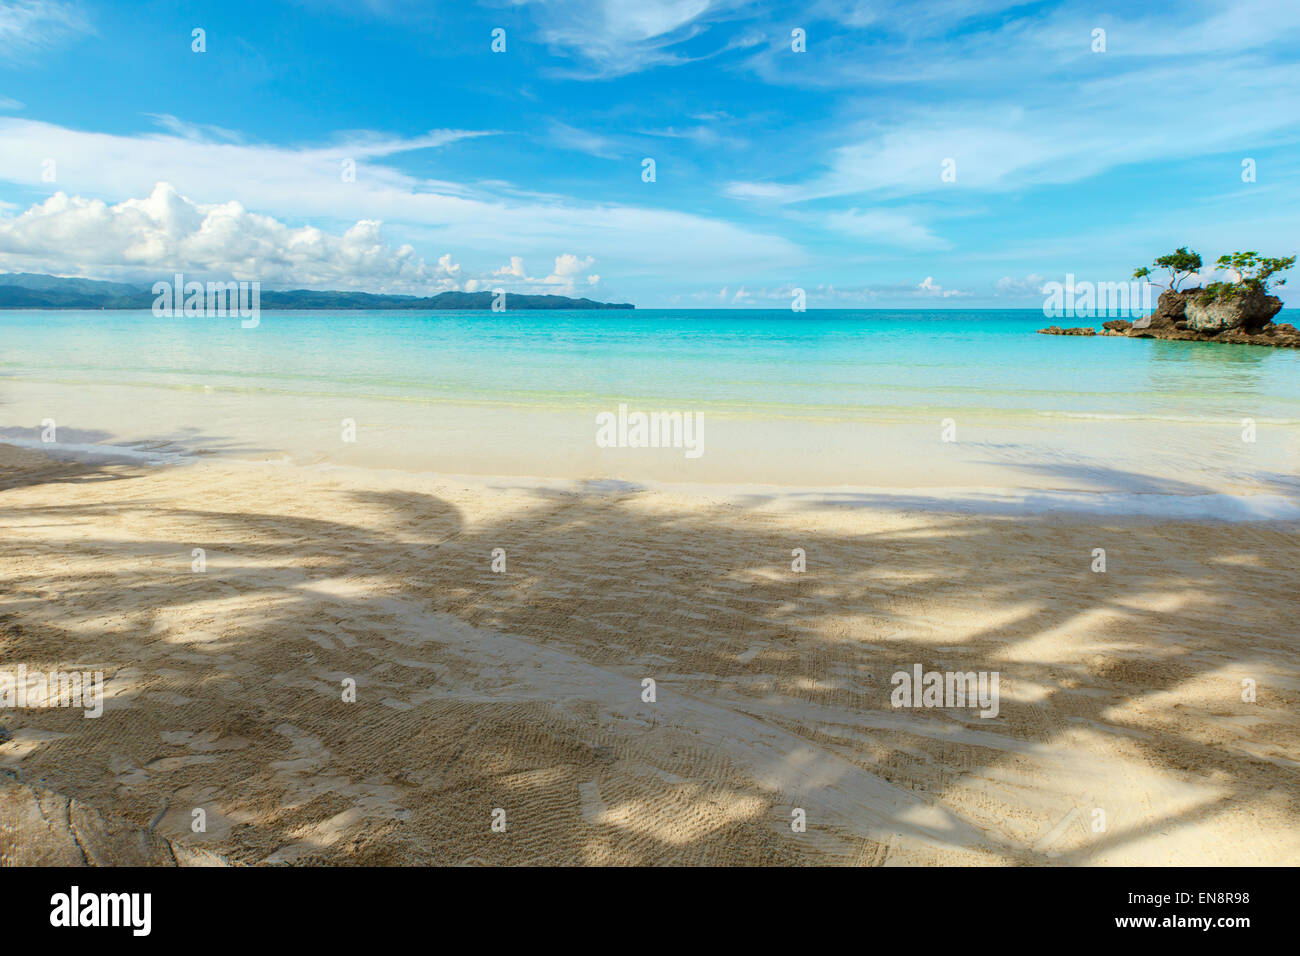 Sonnigen Tag-Ansicht mit tiefblauem Meer und Felsen-Insel mit Palmen Bäume Philippinen Boracay island Stockfoto